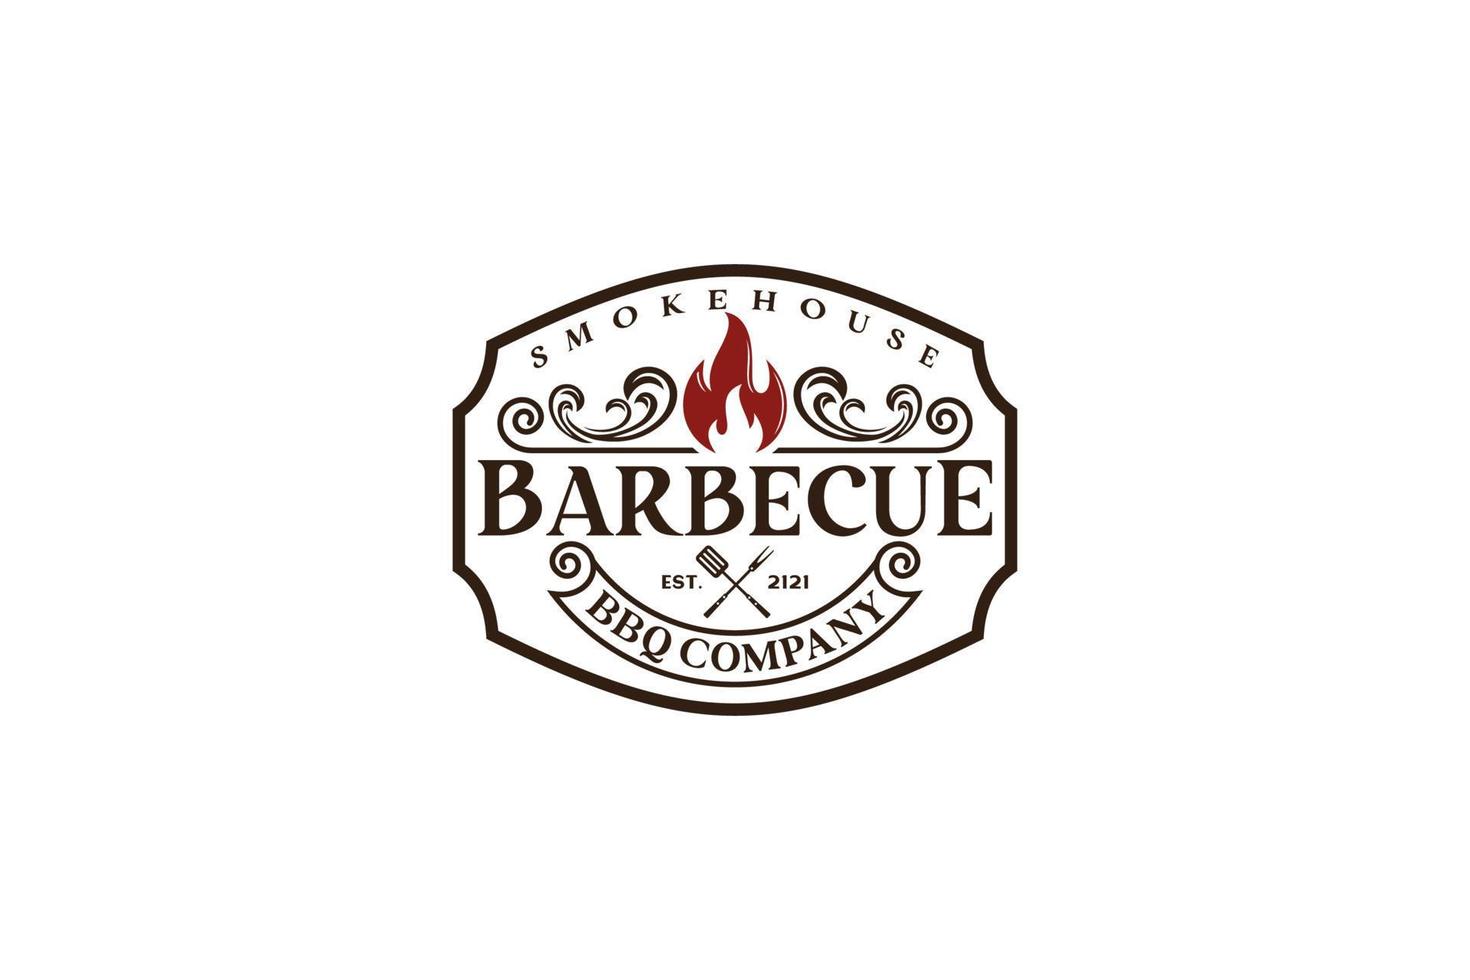 parrilla de barbacoa rústica retro vintage, barbacoa, vector de diseño de logotipo de sello de etiqueta de barbacoa